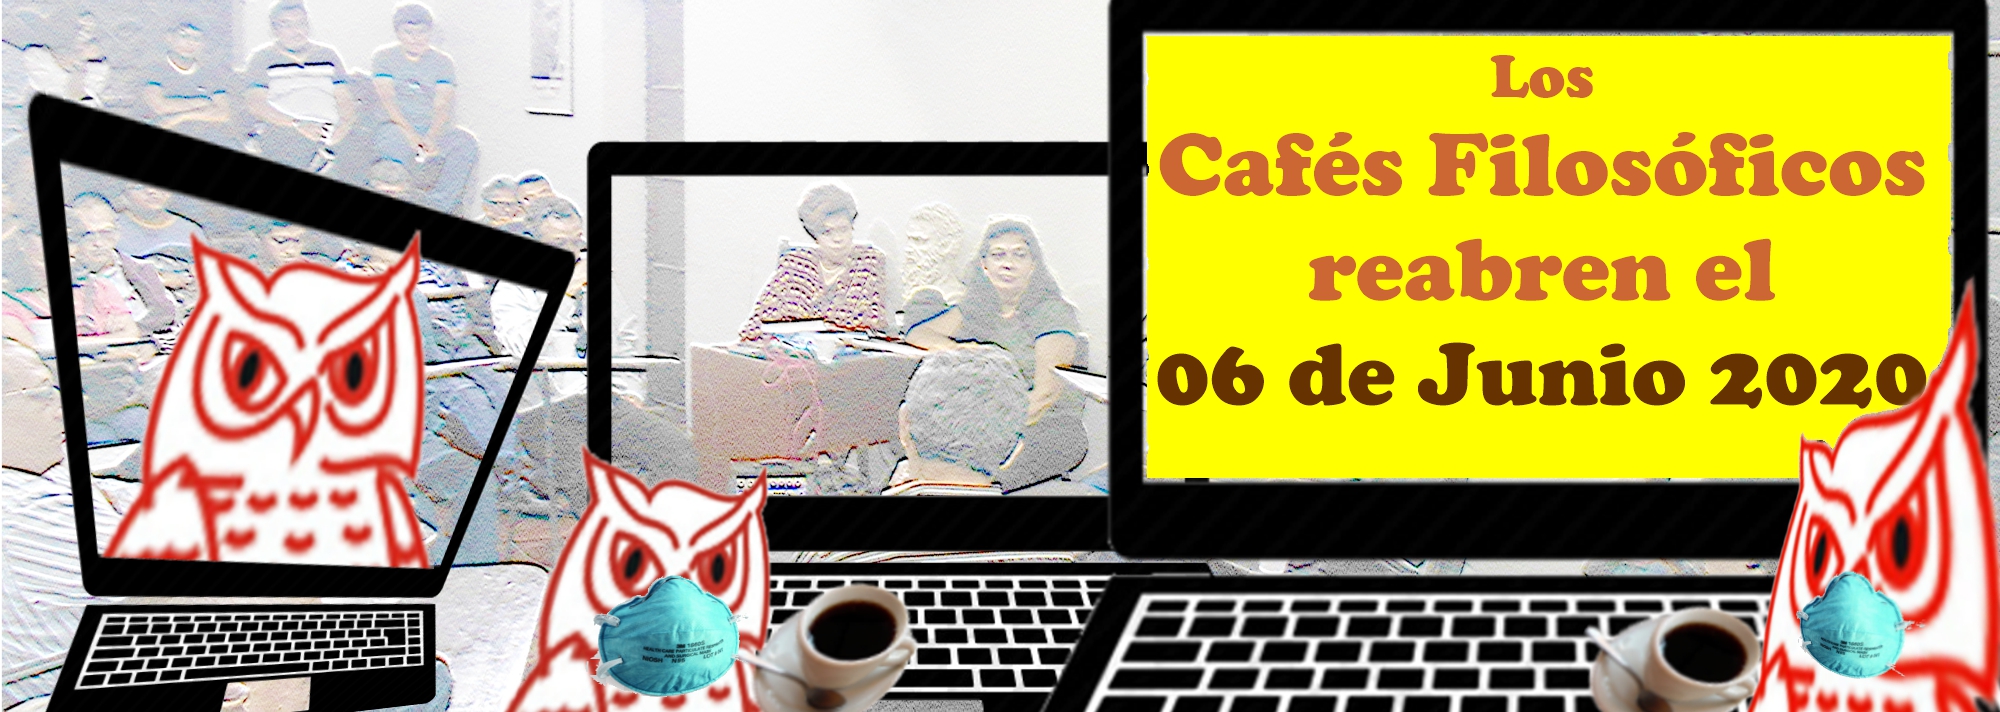 CafeFilosoficoReceso2020a